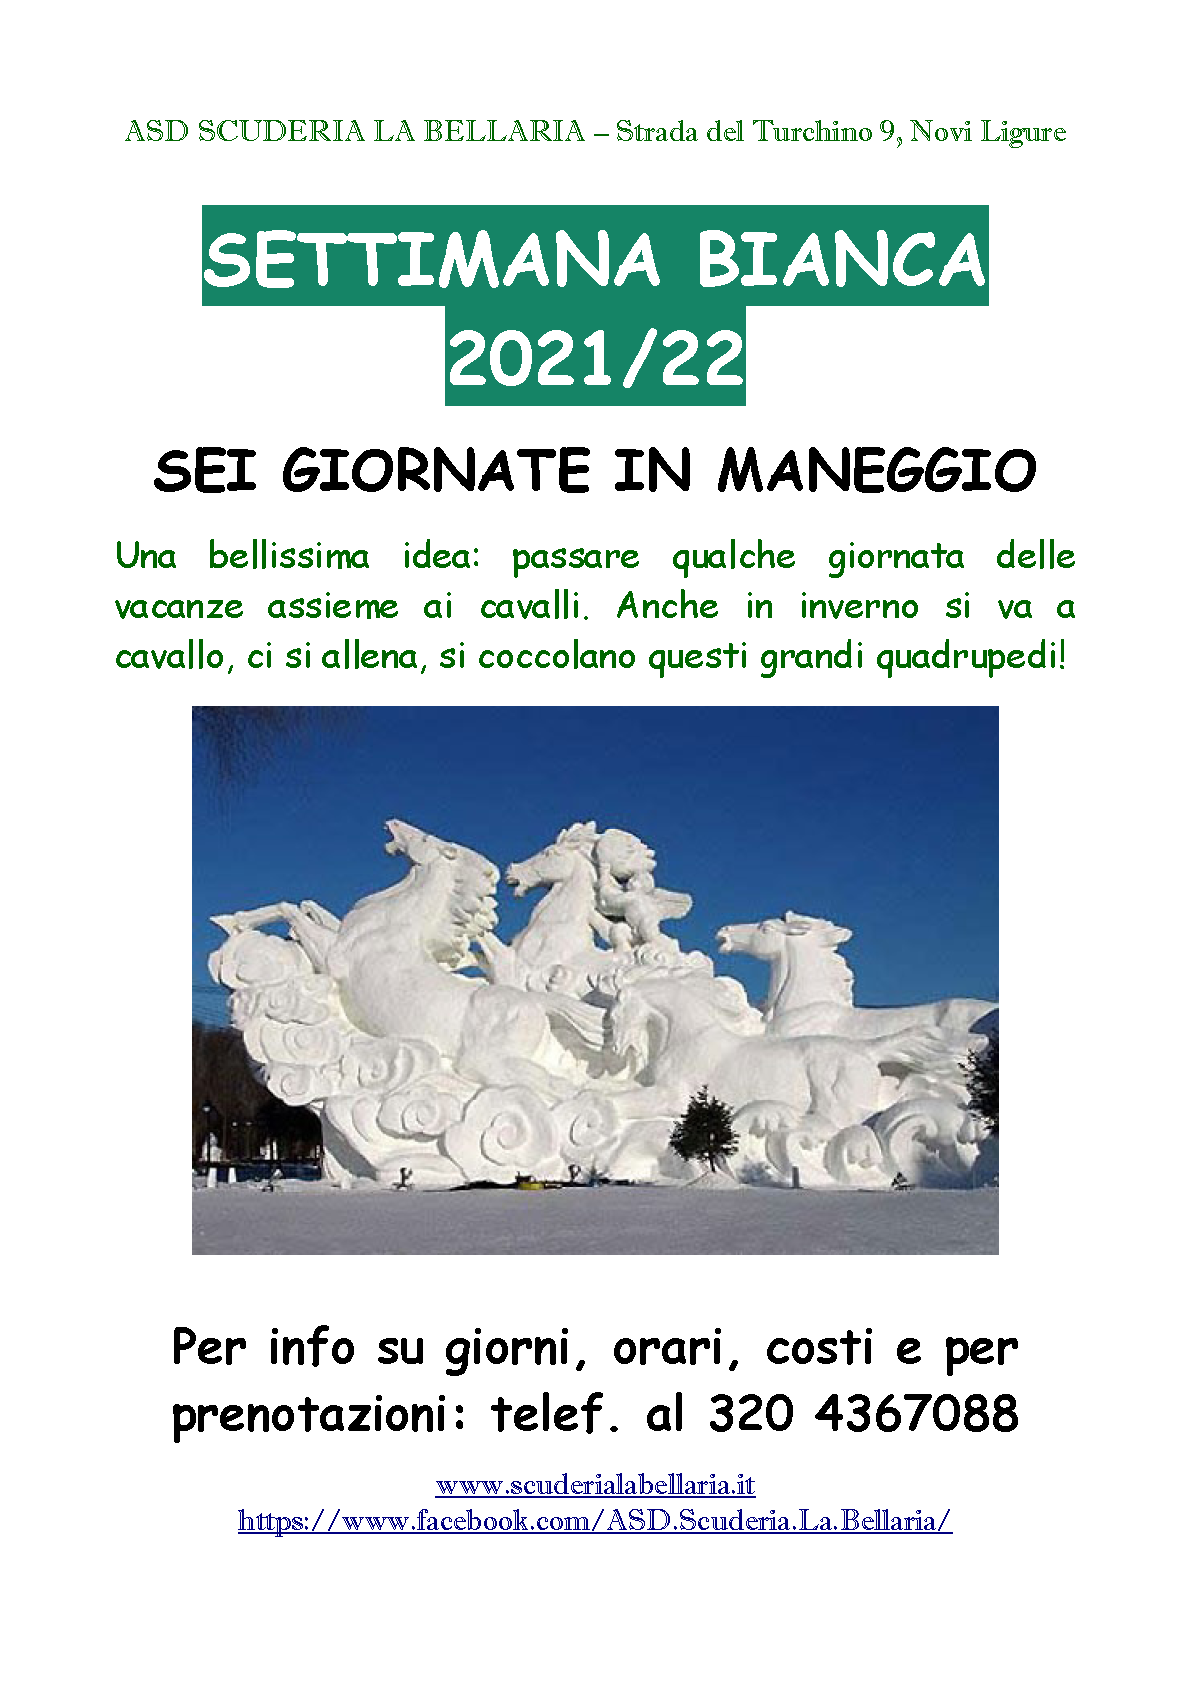 ASD Scuderia La Bellaria (Novi Ligure, AL) - Pagina 8 Settimana_bianca_2021_22